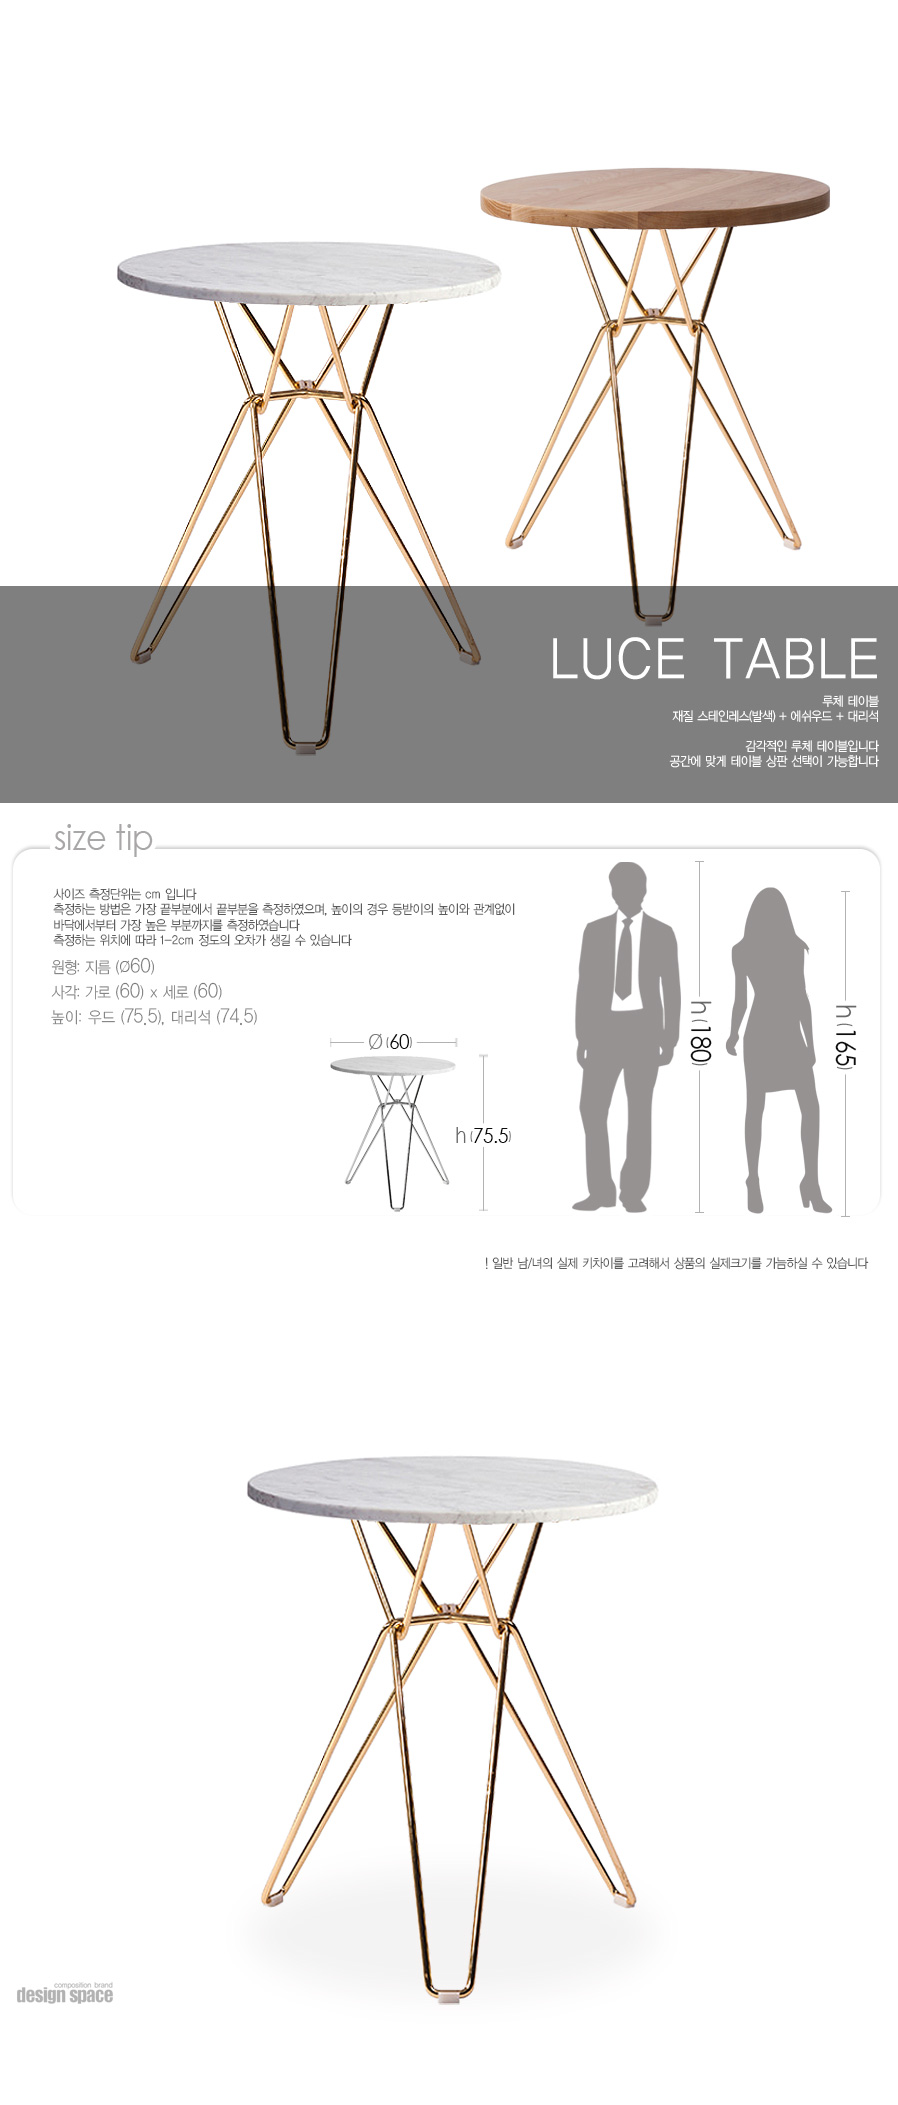 luce-table(루체-테이블)_01.jpg